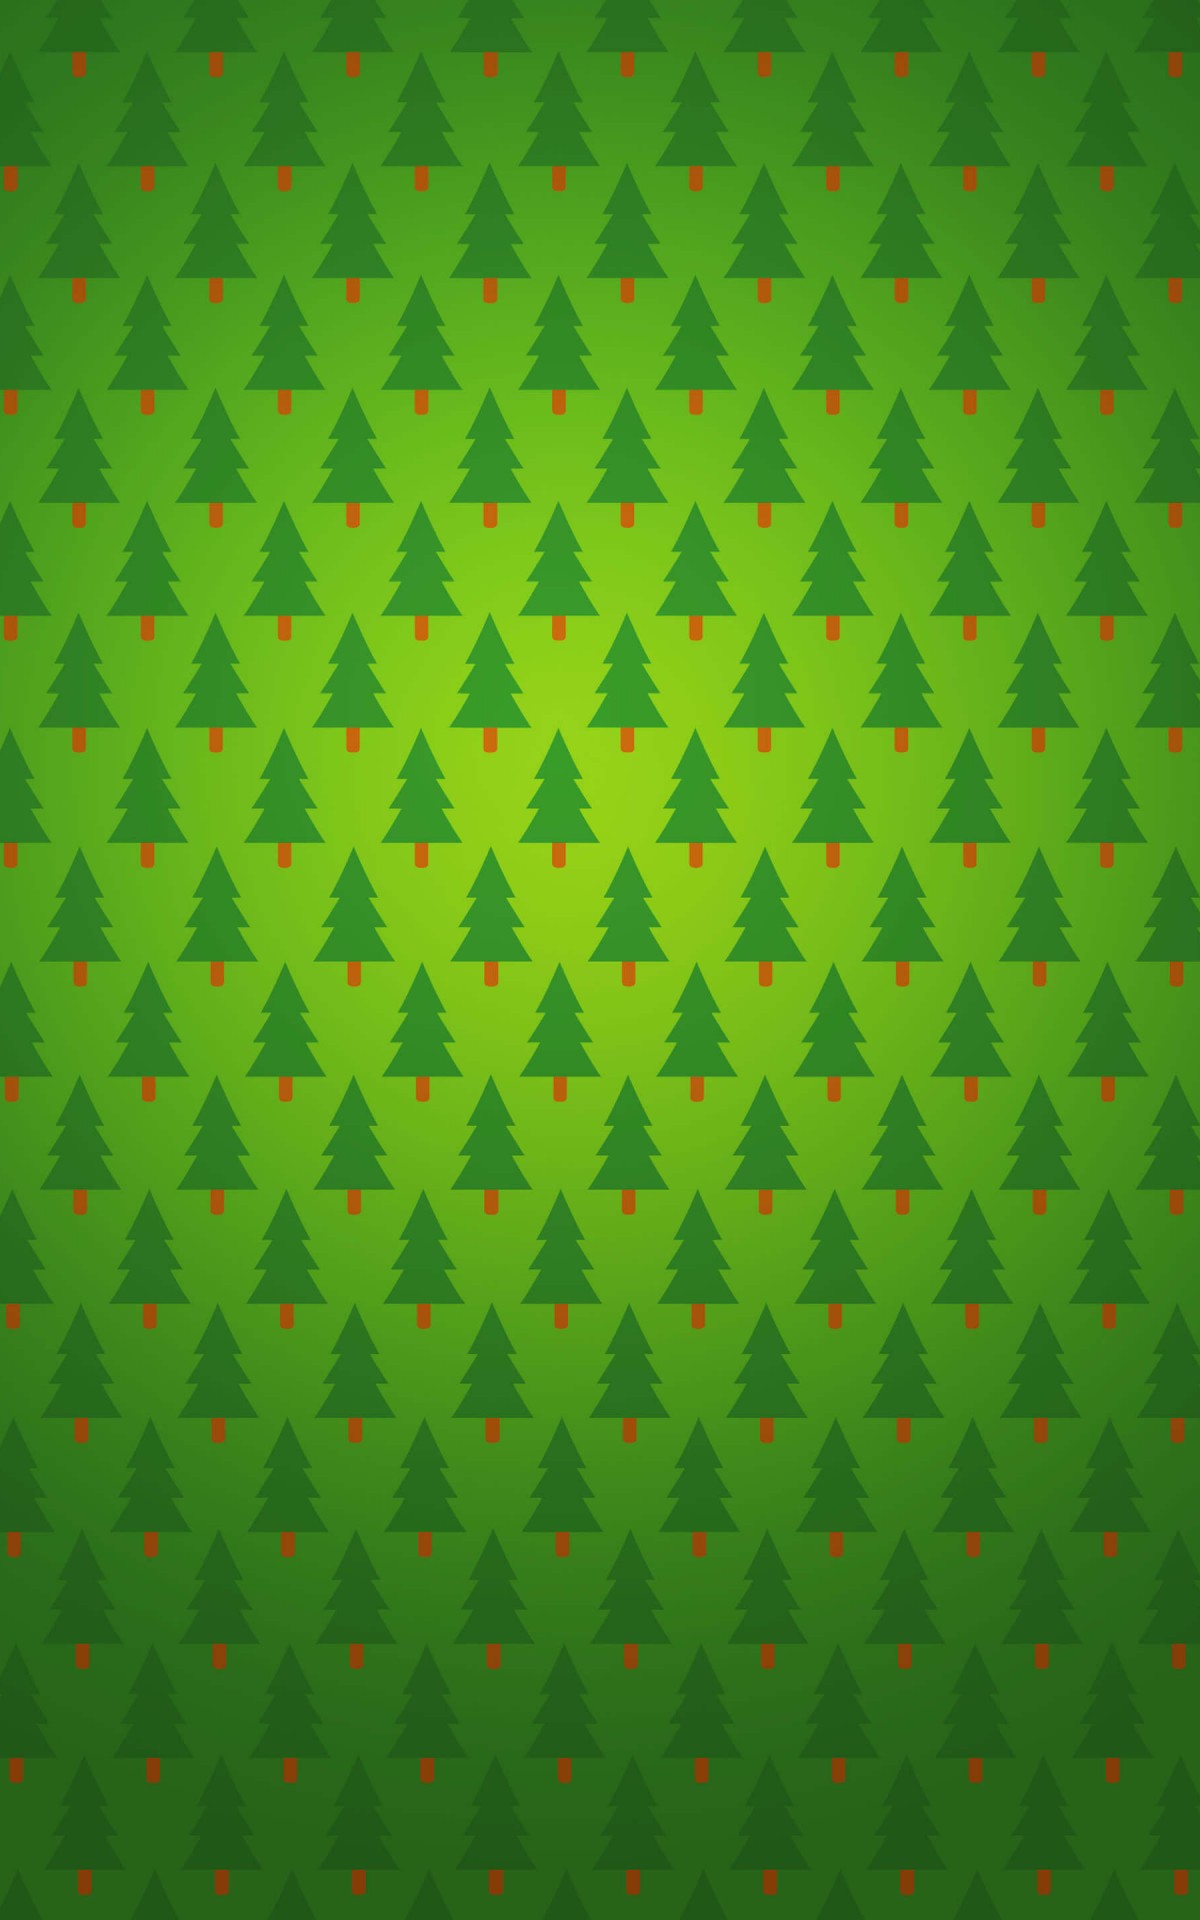 Tree Pattern HD Wallpaper For Kindle Fire HDx HDwallpaper